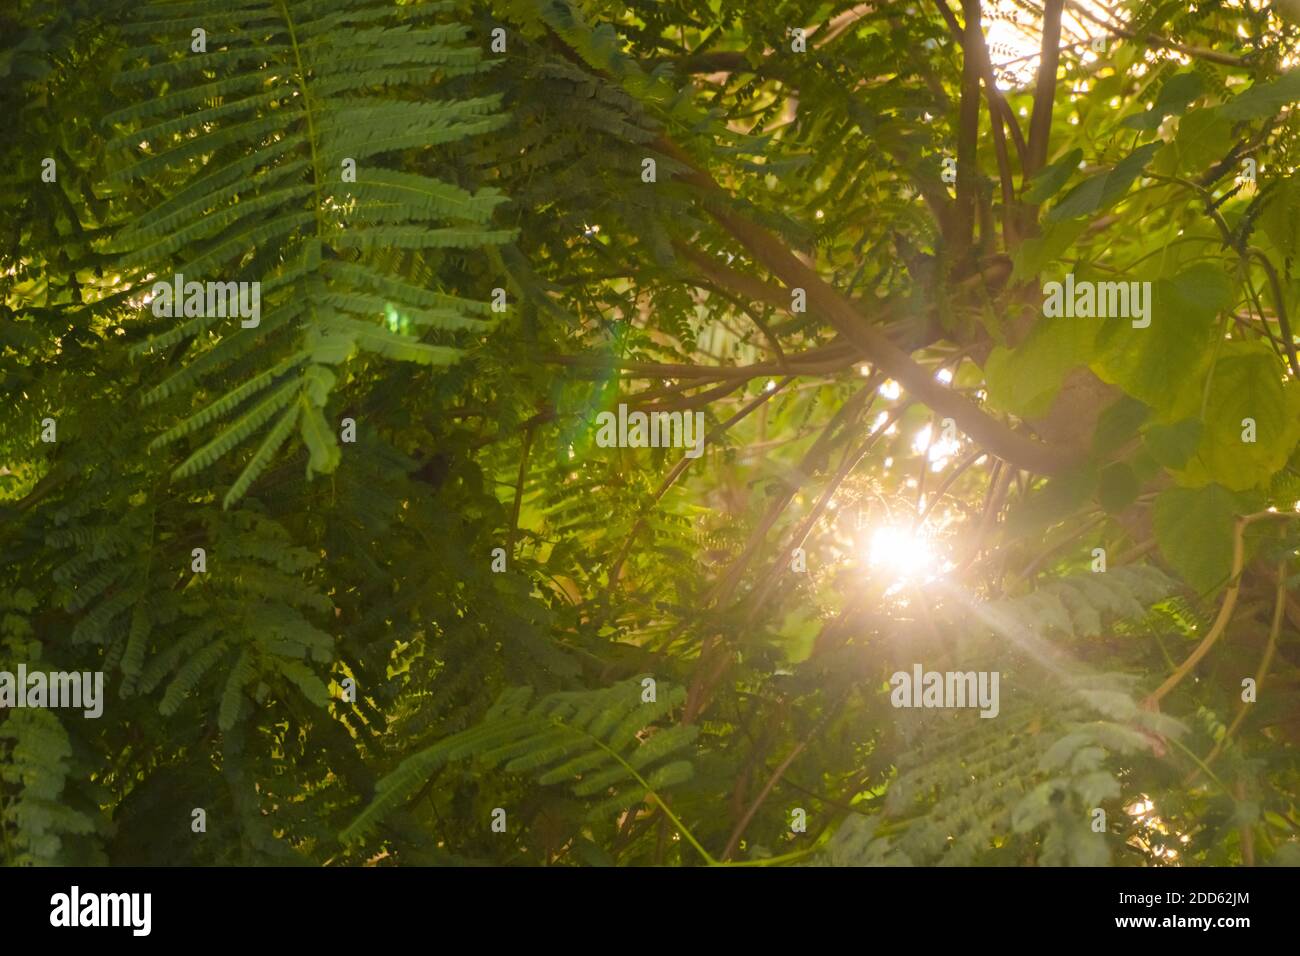 Verde fogliame alla luce del sole. Foto di alta qualità Foto Stock